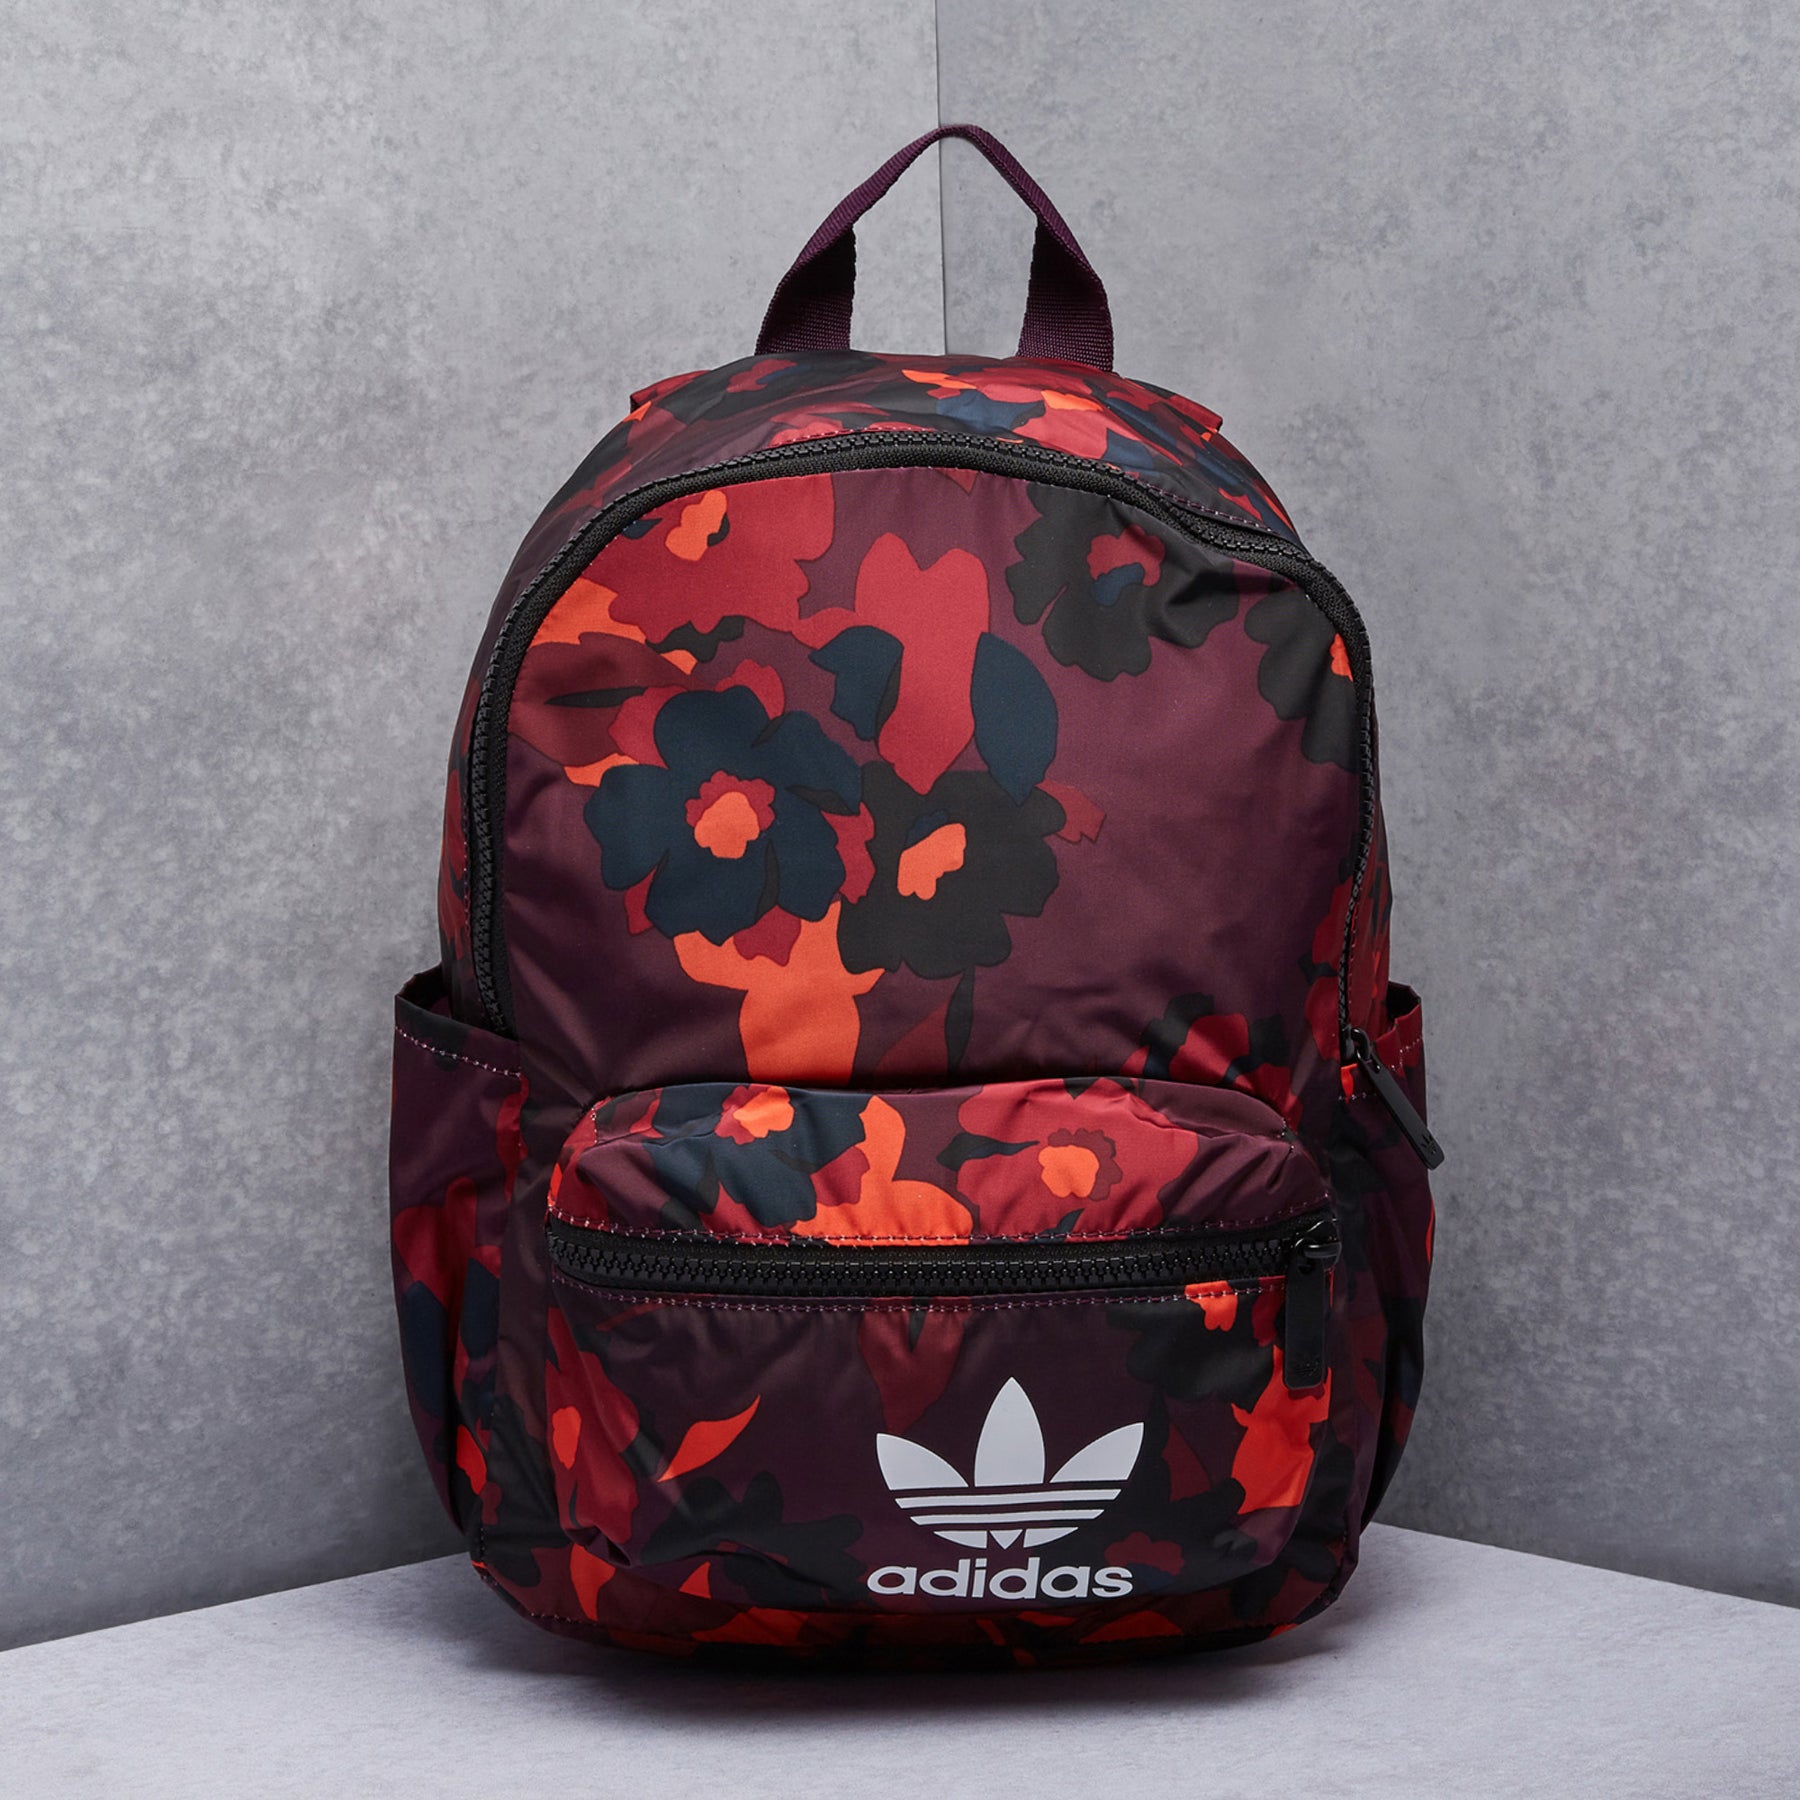 adidas Originals HER Studio Bag | Dropkick